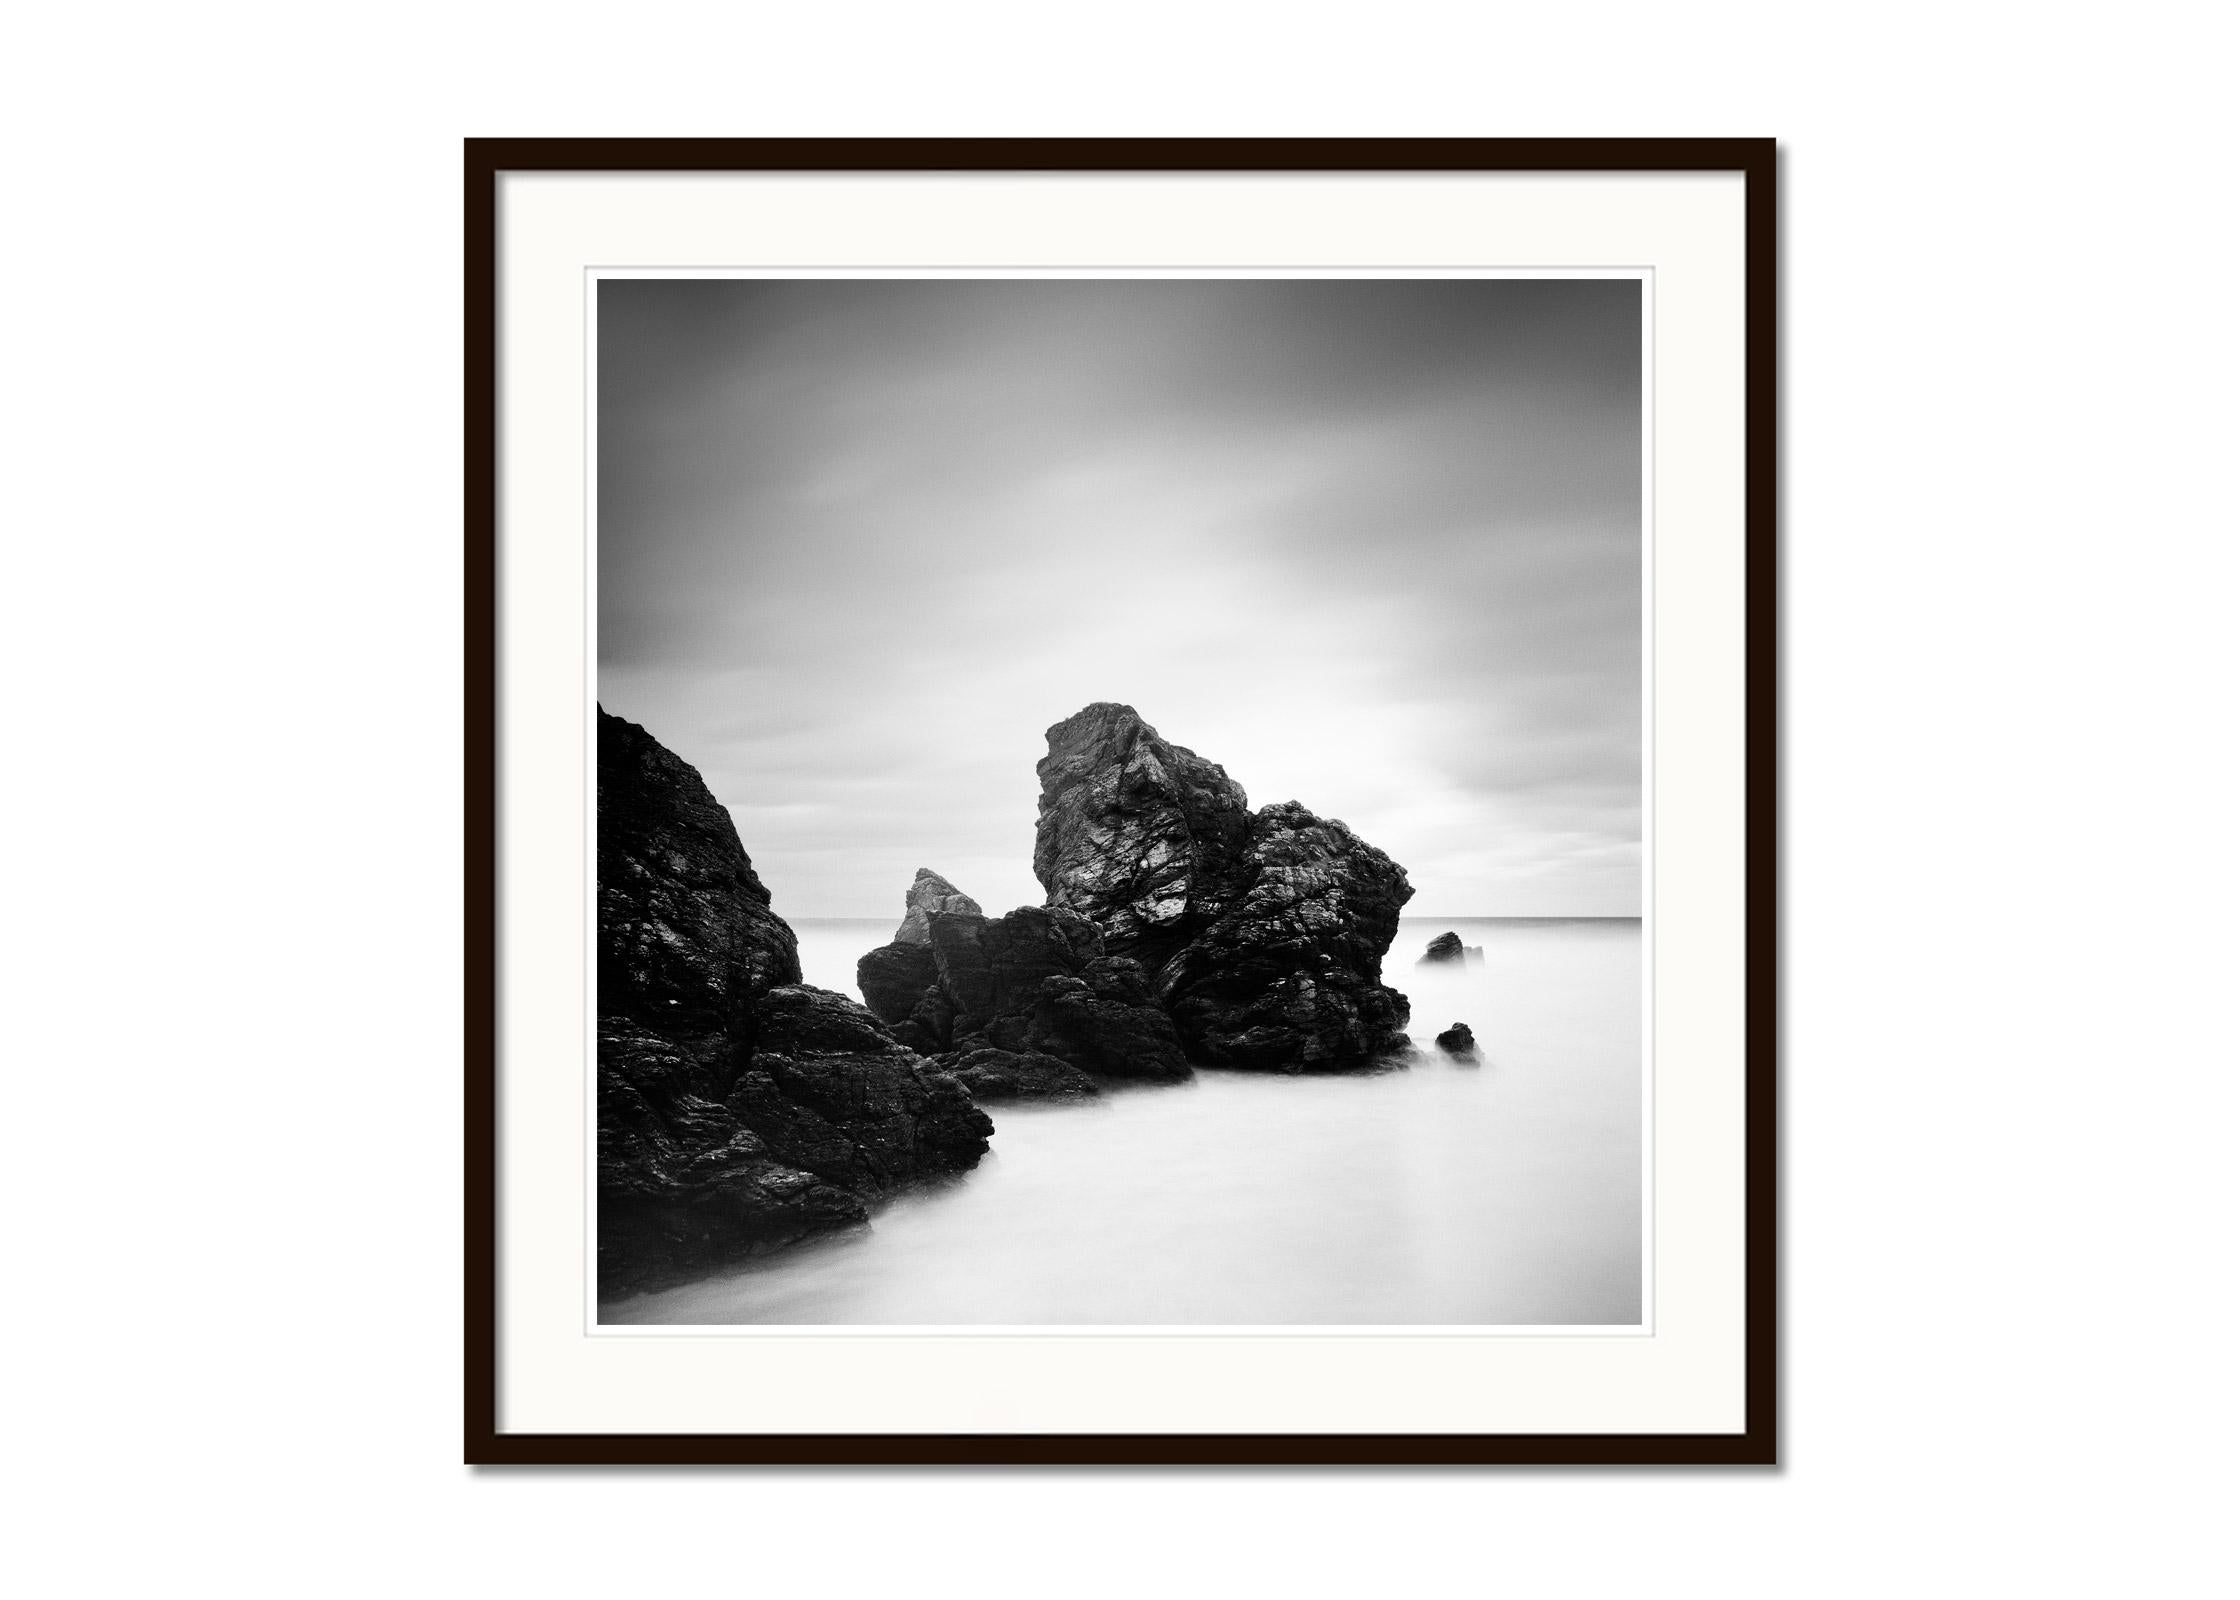 Award Winning Beach, Schottland,  Schwarz-Weiß-Drucke, Landschaftsdrucke, minimalistisch (Grau), Landscape Photograph, von Gerald Berghammer